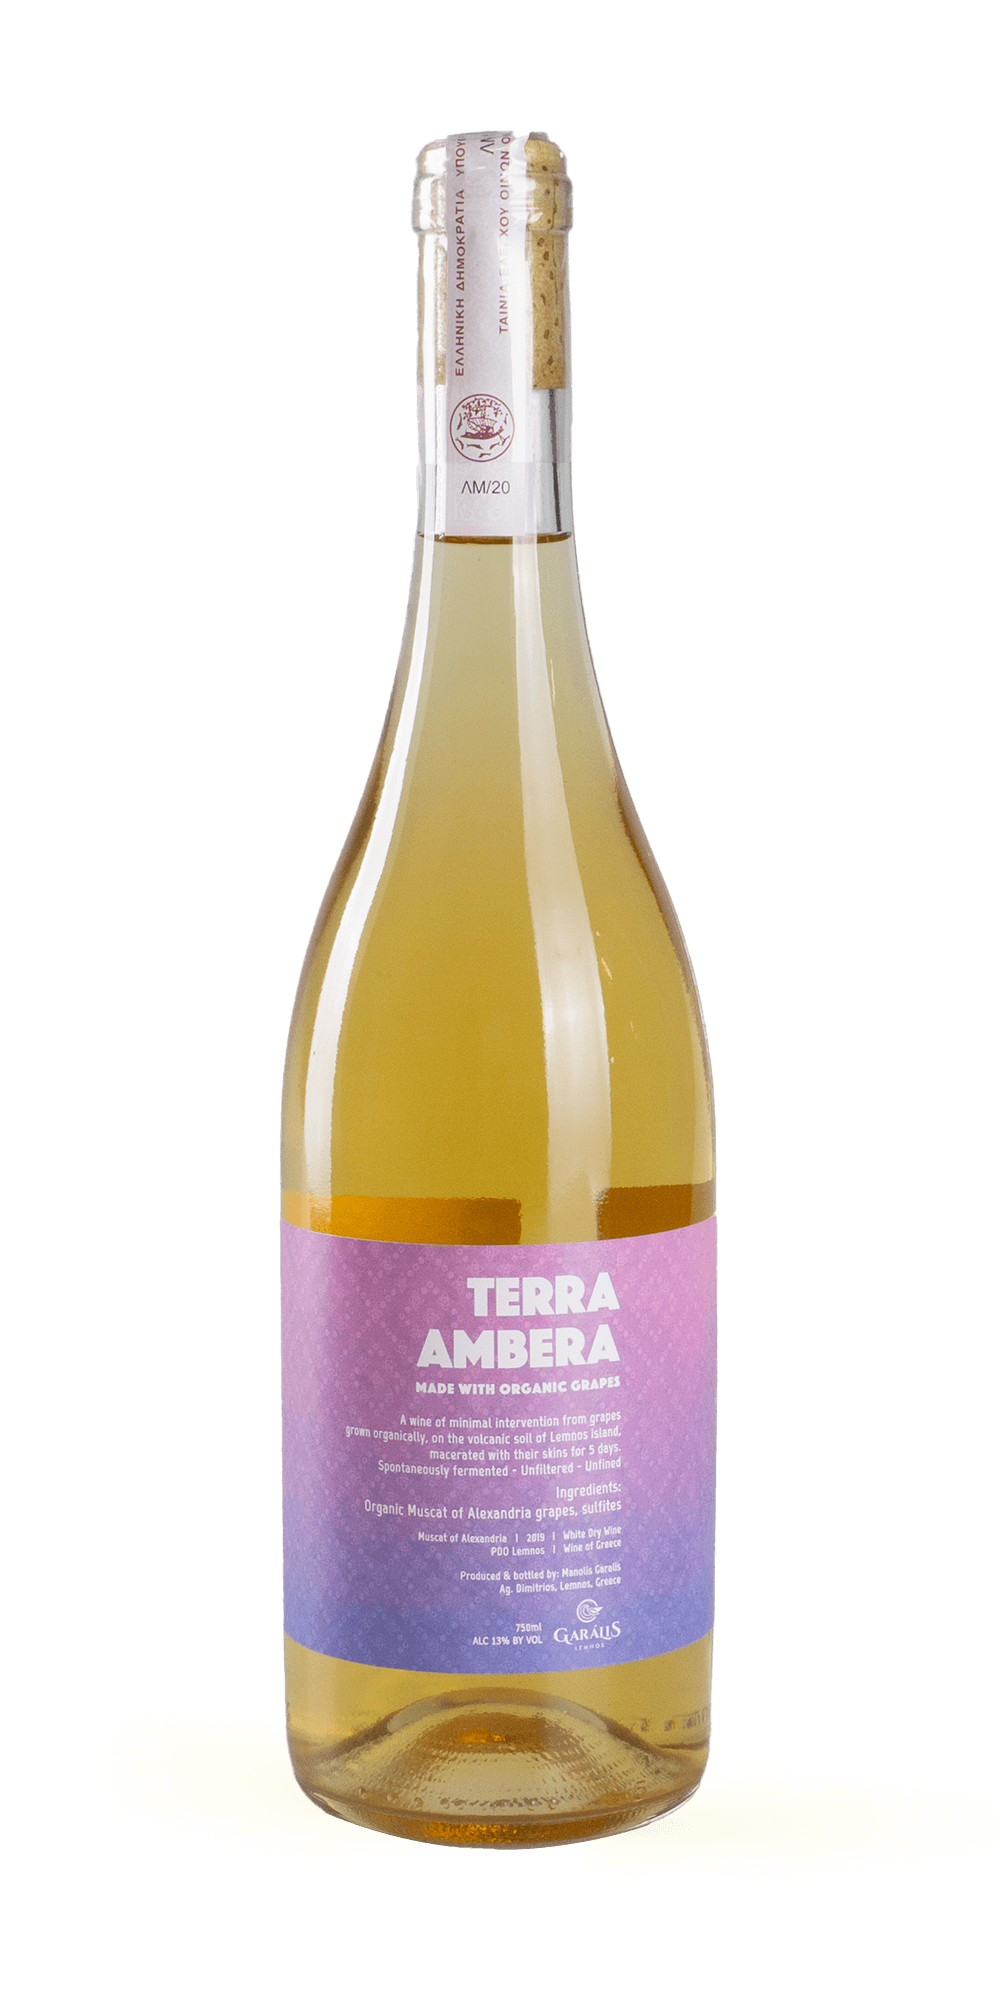 Terra Ambera BIO 2019 - Garalis Winery